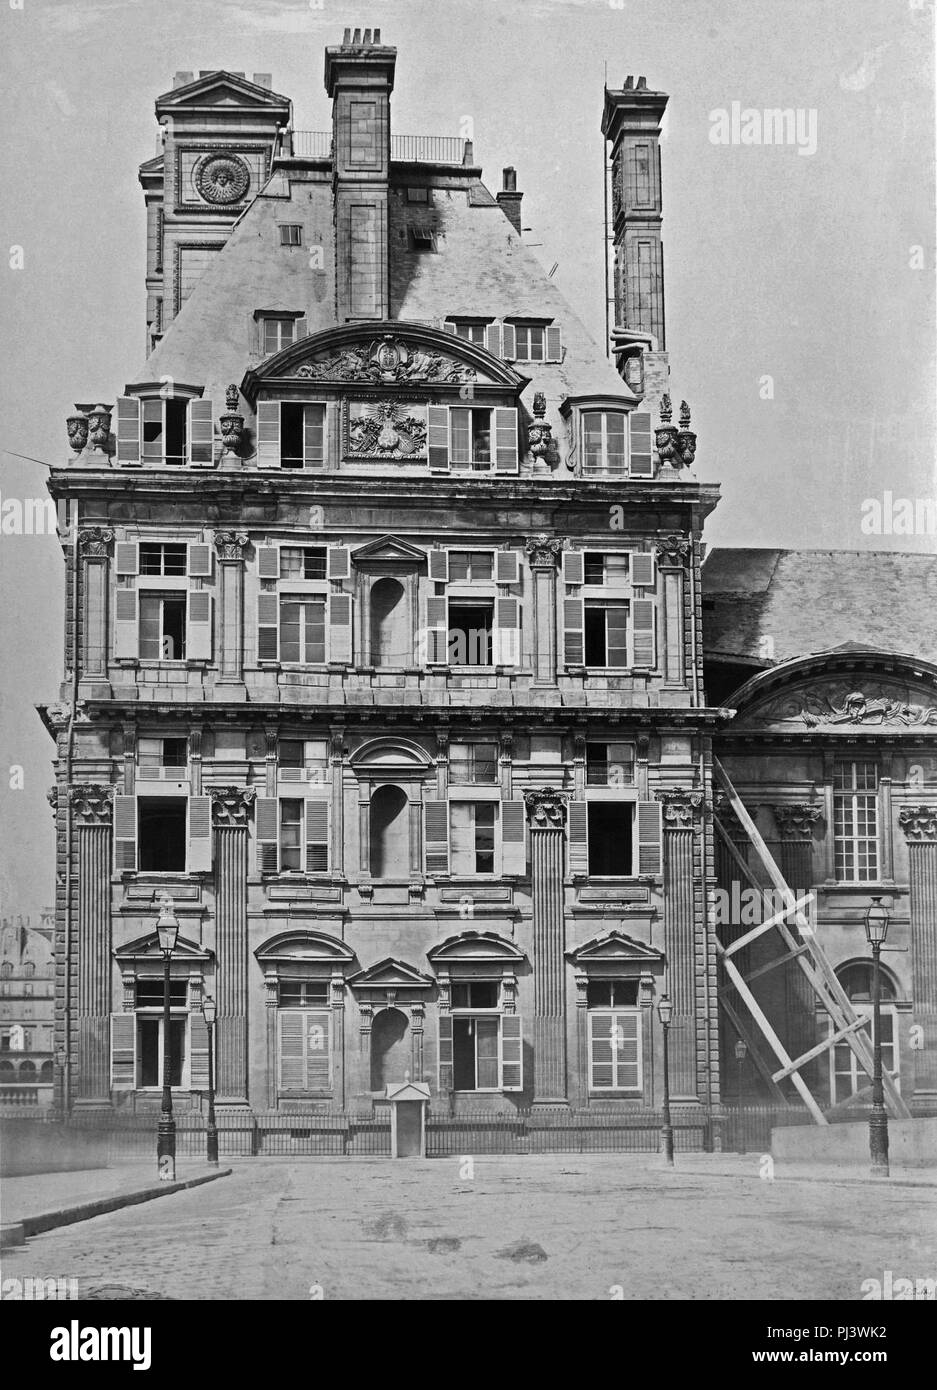 Baldus 1861 Pavillon de Flore – Musée Carnavalet – vergue(dot)com (adjusted). Stock Photo